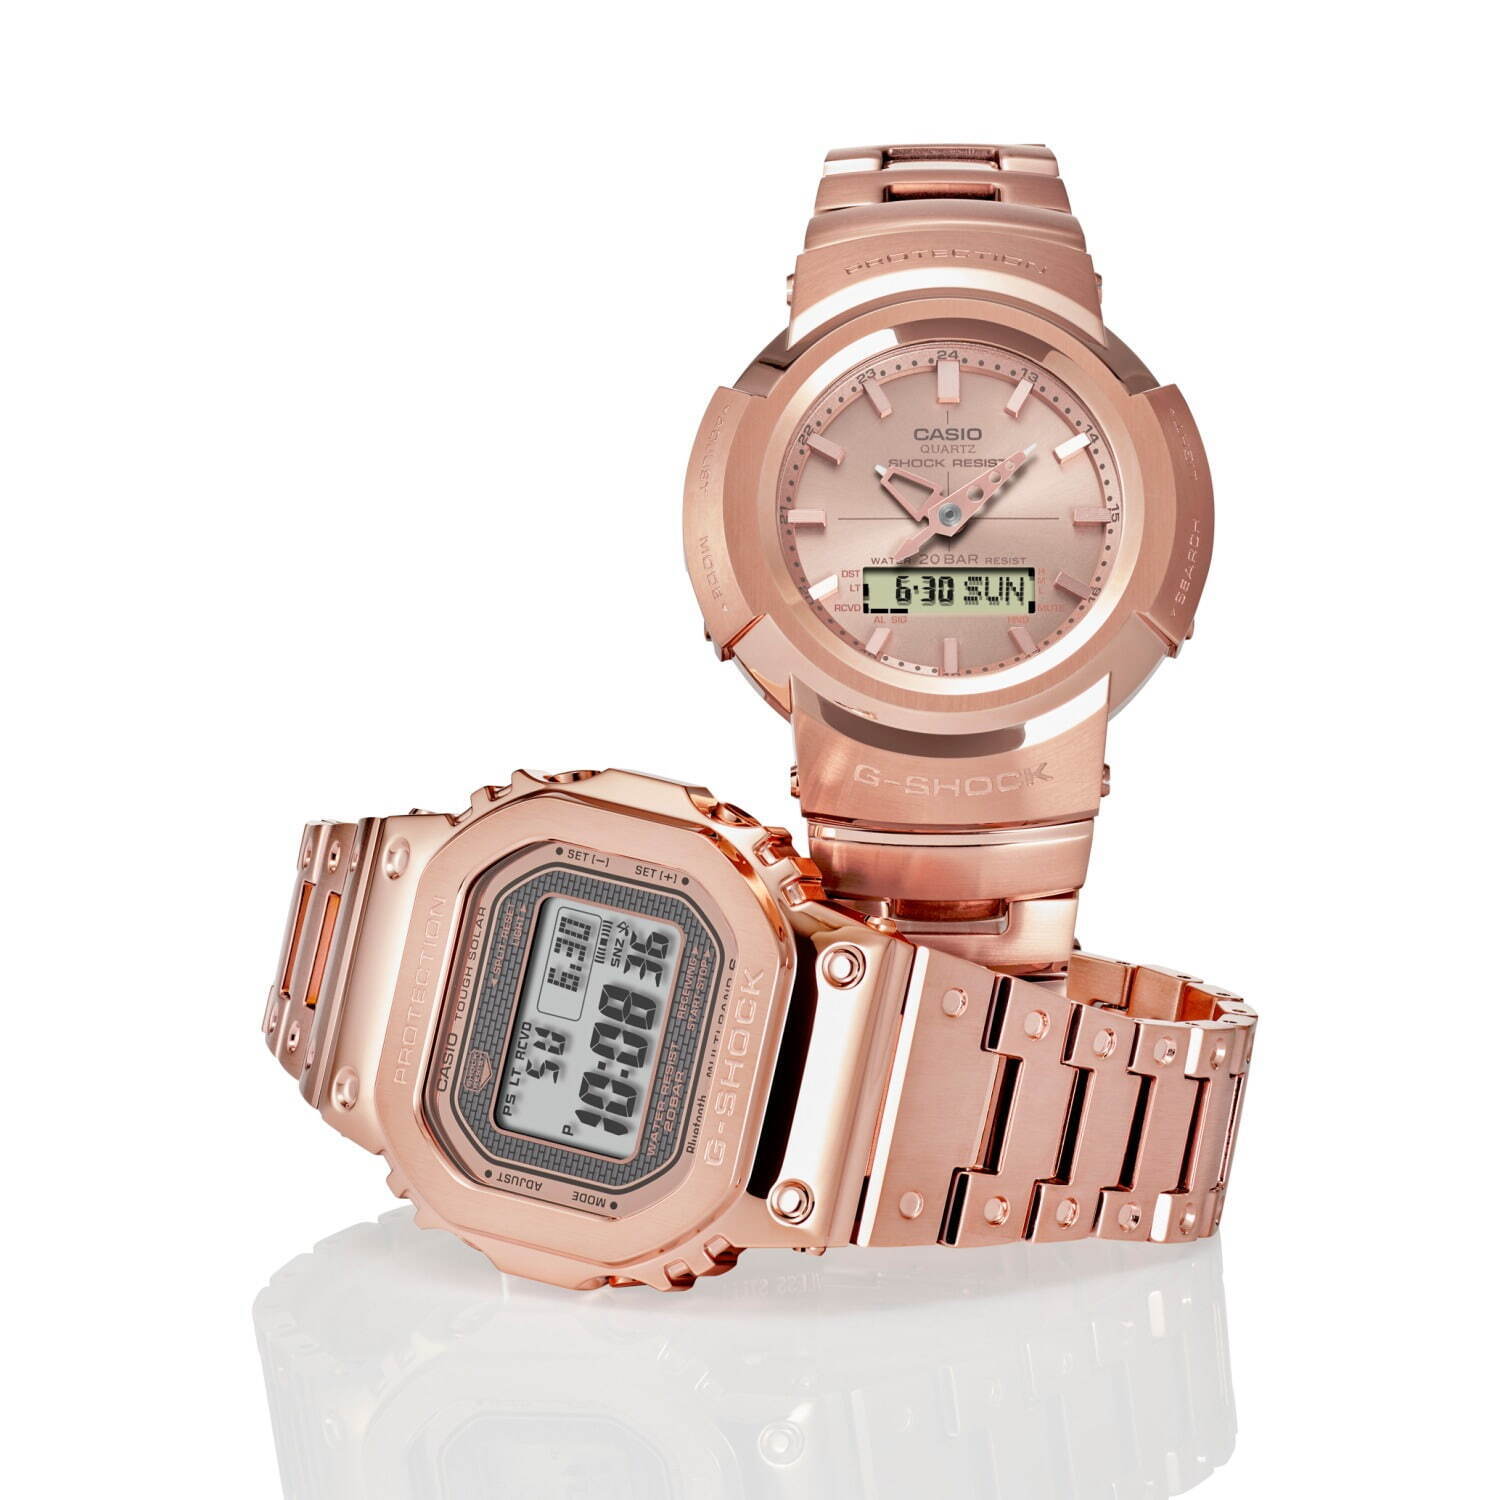 G Shock ローズゴールド のフルメタル腕時計 金属の塊 から削りだしたような質感に ファッションプレス